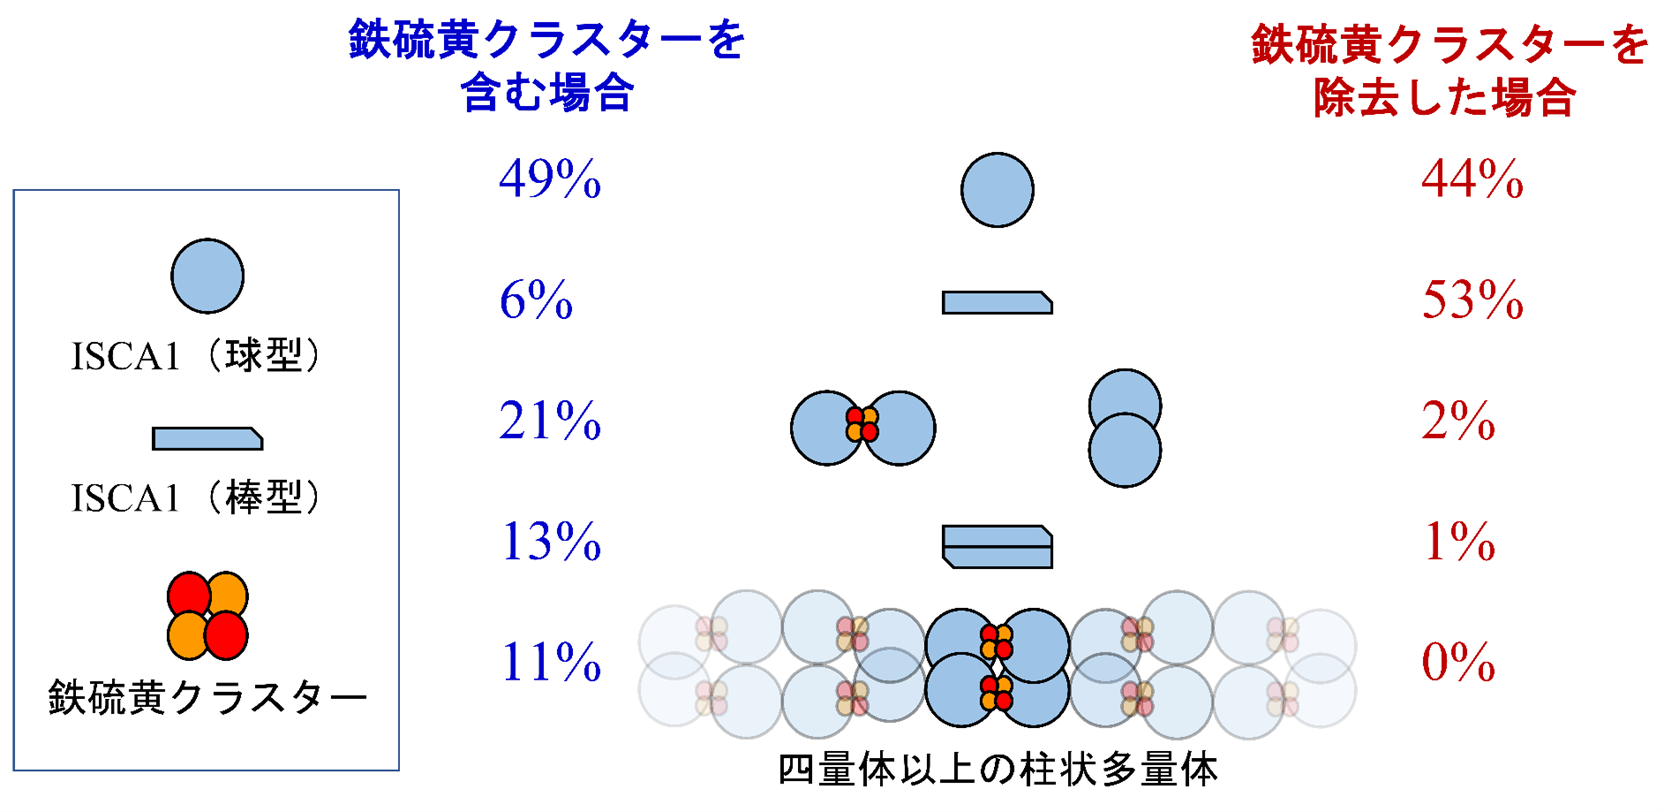 図３　1 mg/mLのISCA1溶液を用いて、人工的な磁場を印加しない自然な状態で観測された、ISCA1の構造（図中央）とそれらが含まれる割合（左右の数値）。鉄硫黄クラスターを含む生体内の環境に似た溶液中の場合（左）では、柱状多量体が11%存在すると見積も